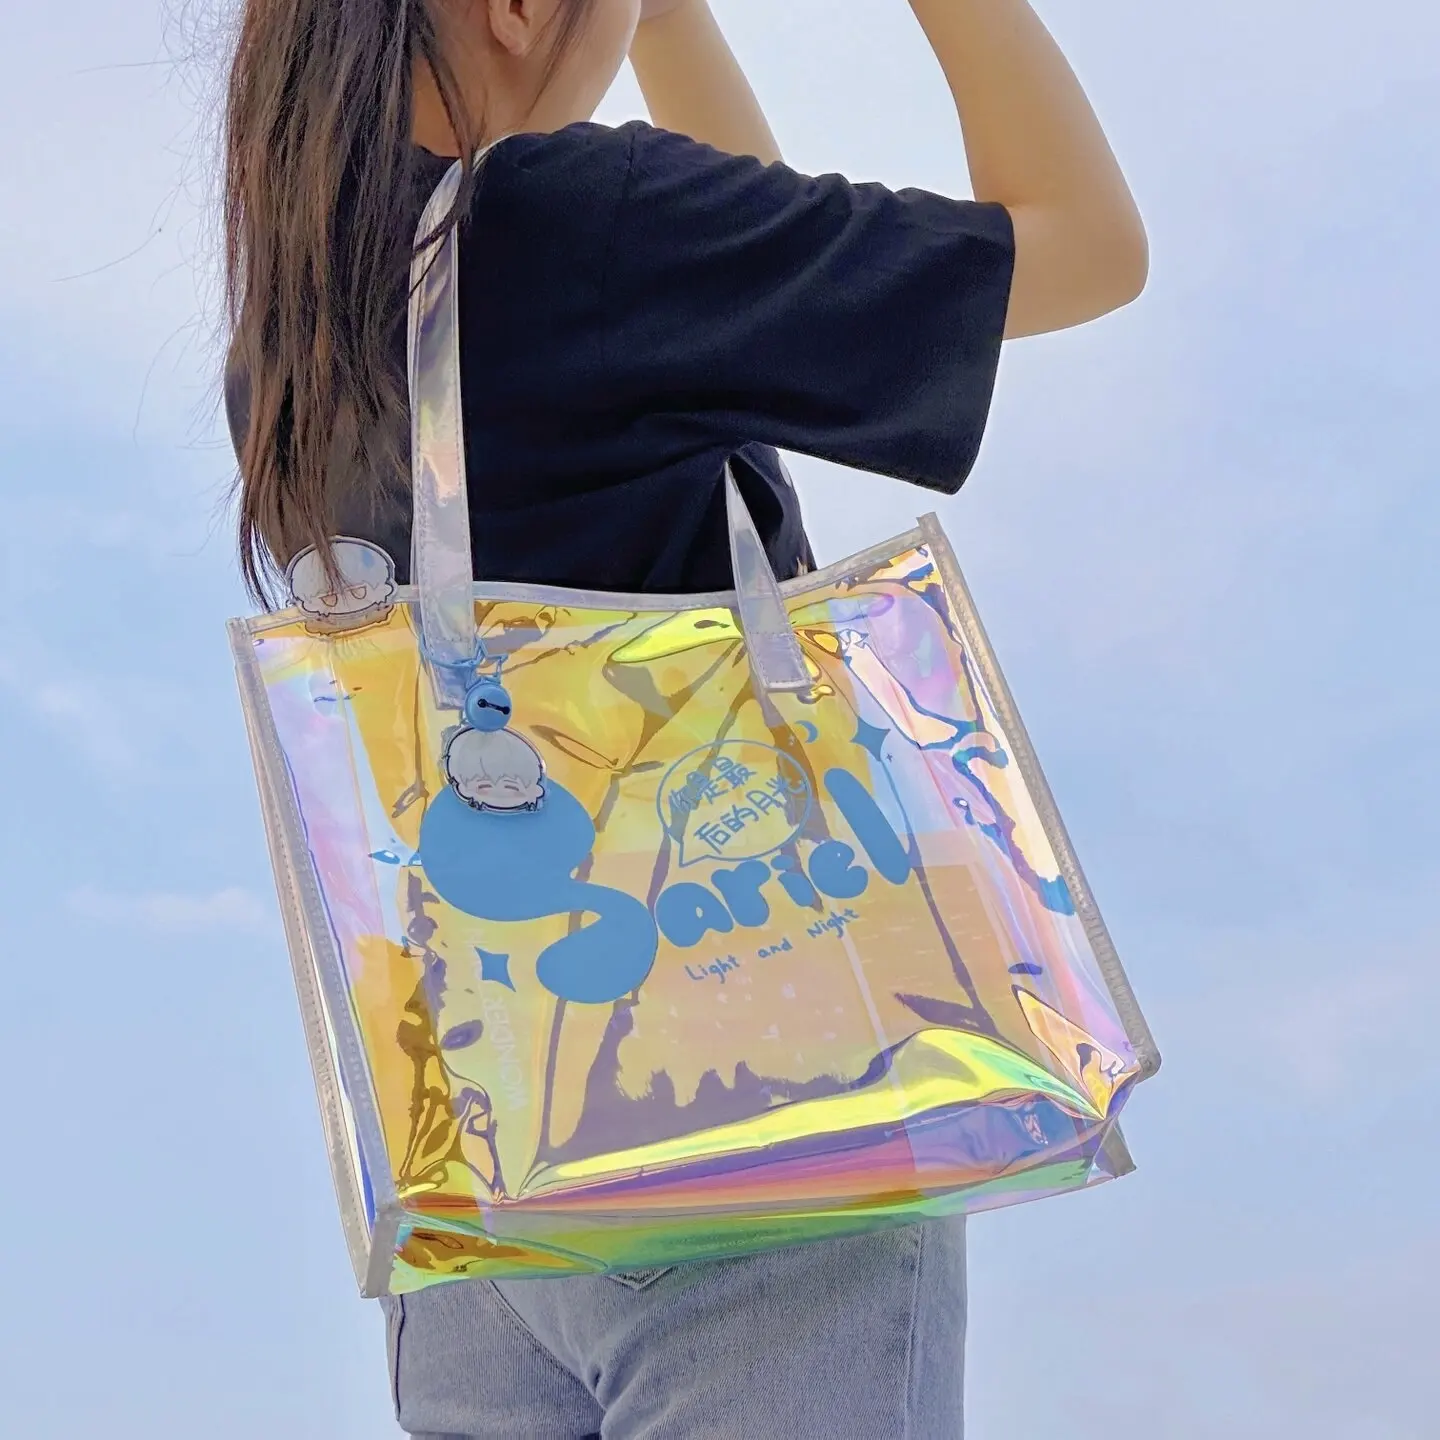 Luxus Shopping PVC Laser Geschenk Handtasche Benutzer definierte holo graphische Verpackung Großhandel Strand Transparente Taschen Mit Logos Wieder verwendbar